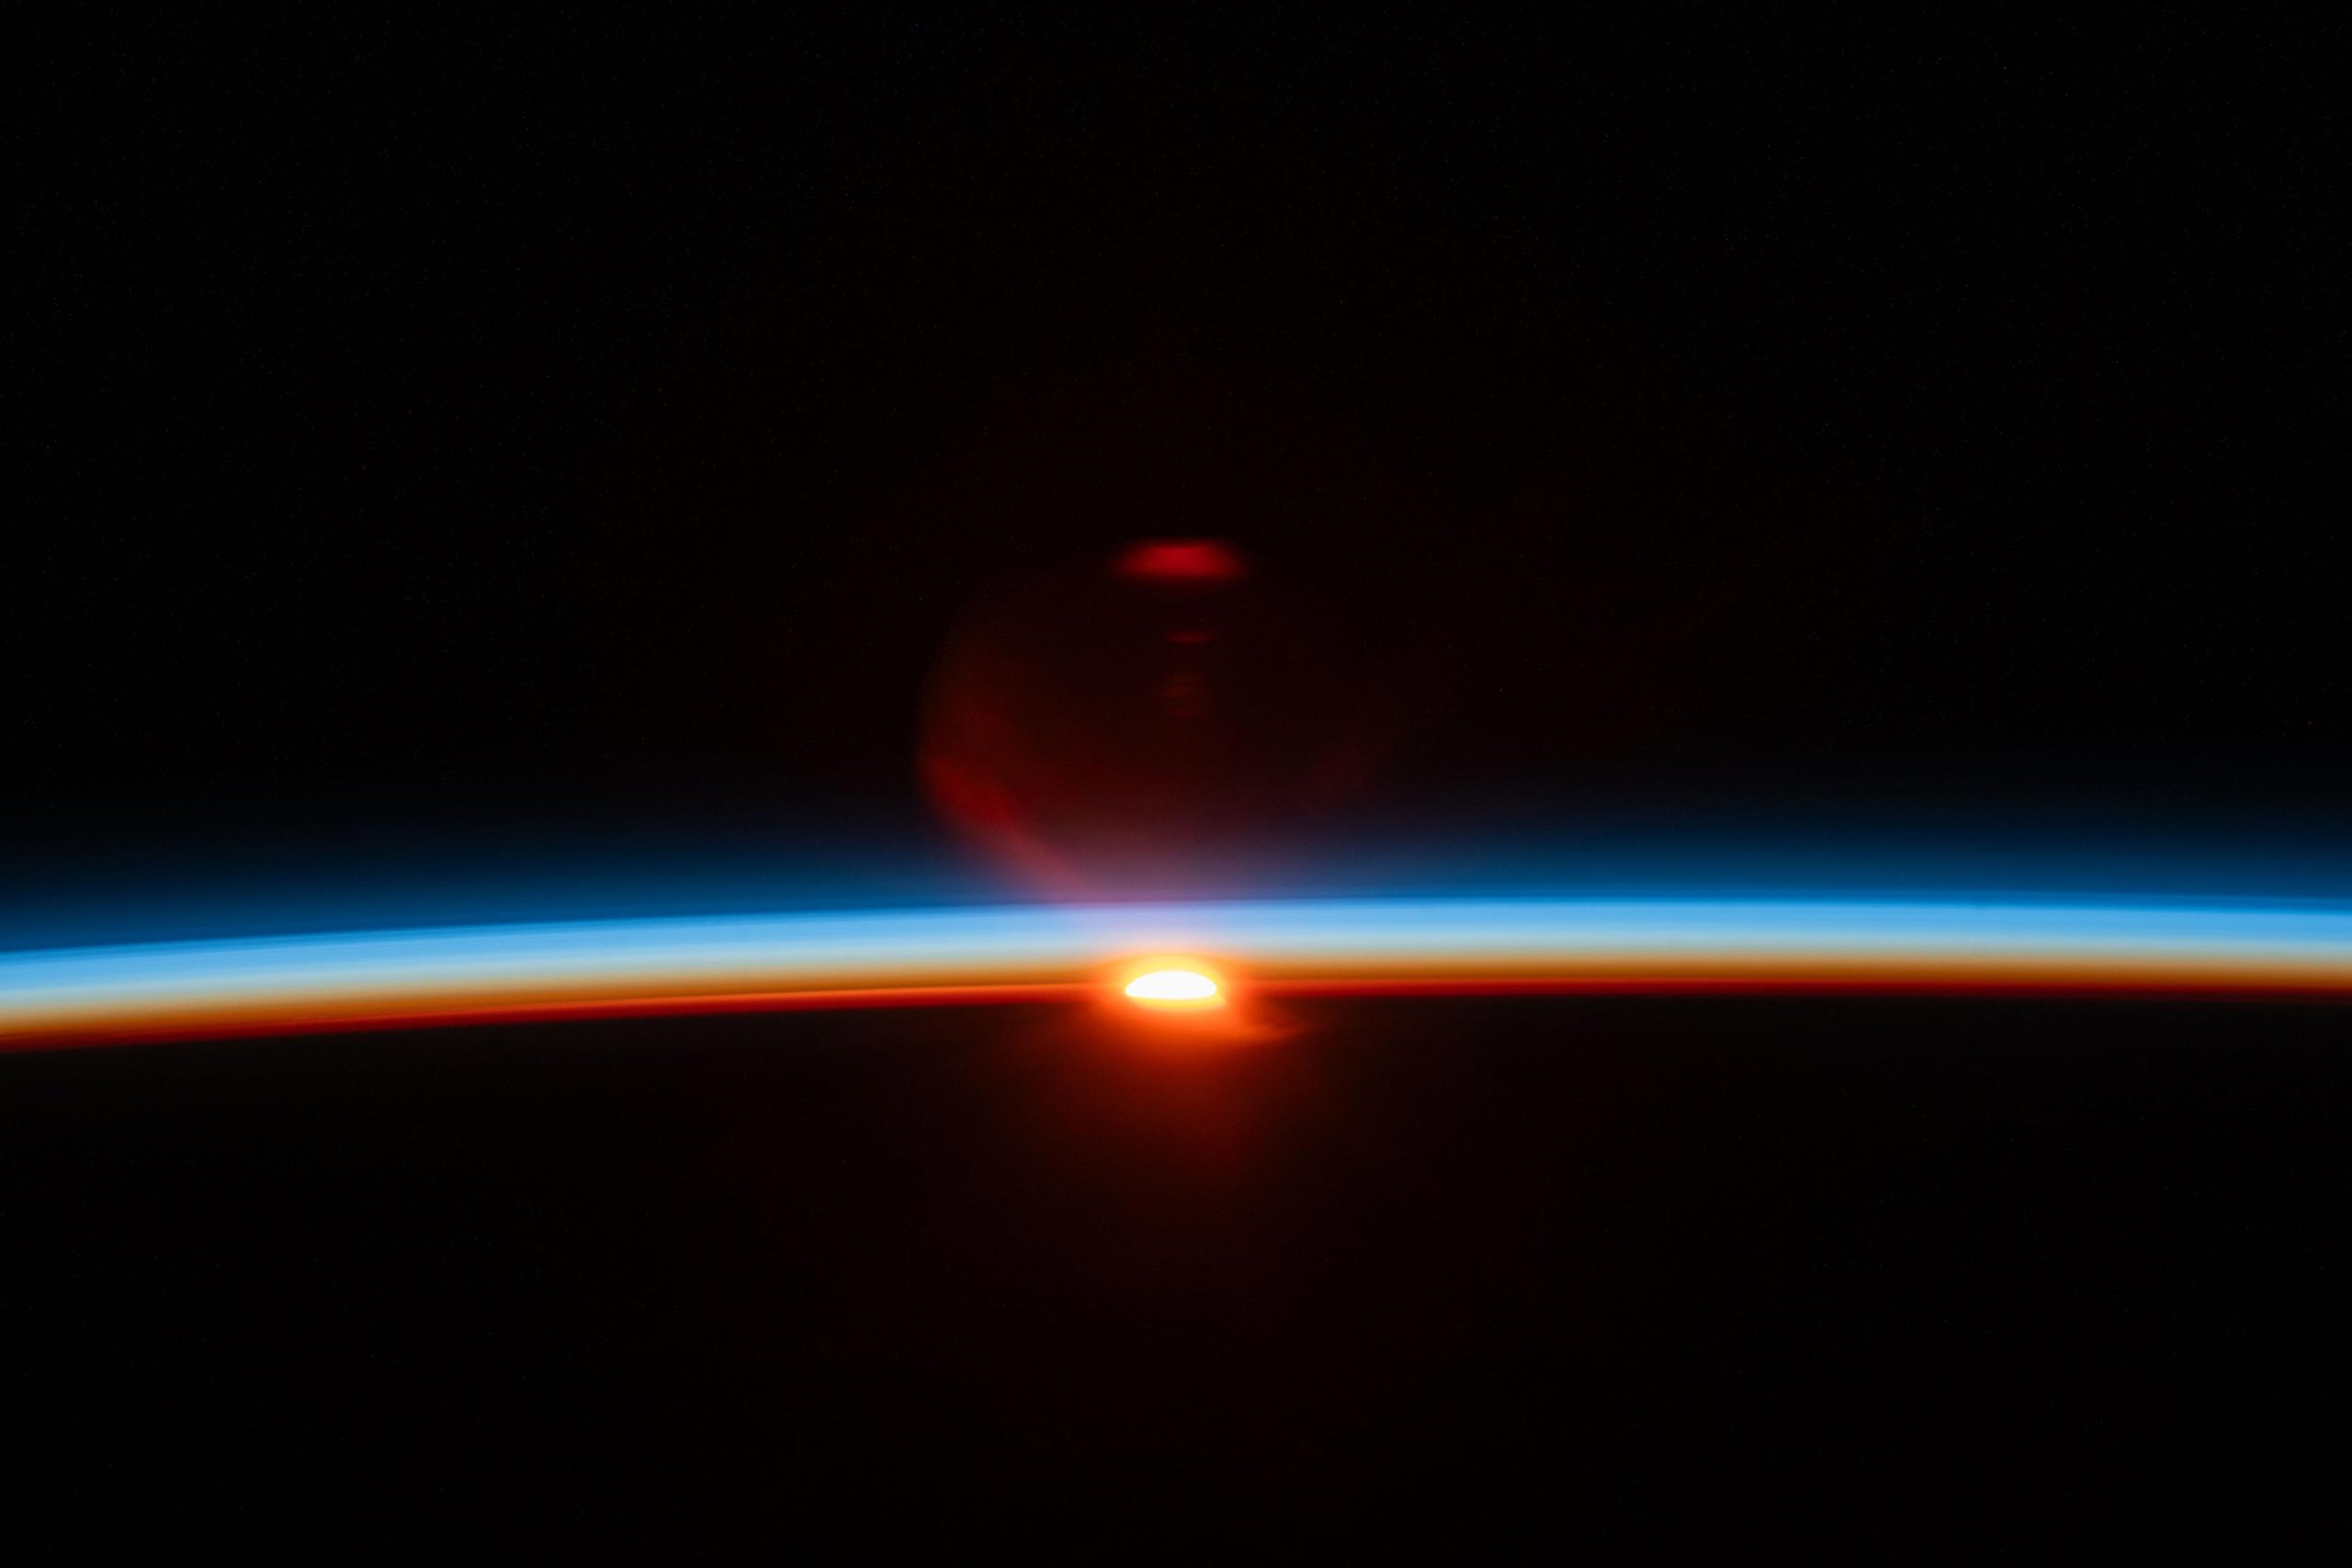 Suns-Last-Rays-Illuminate-Earths-Atmosphere-scaled.jpg